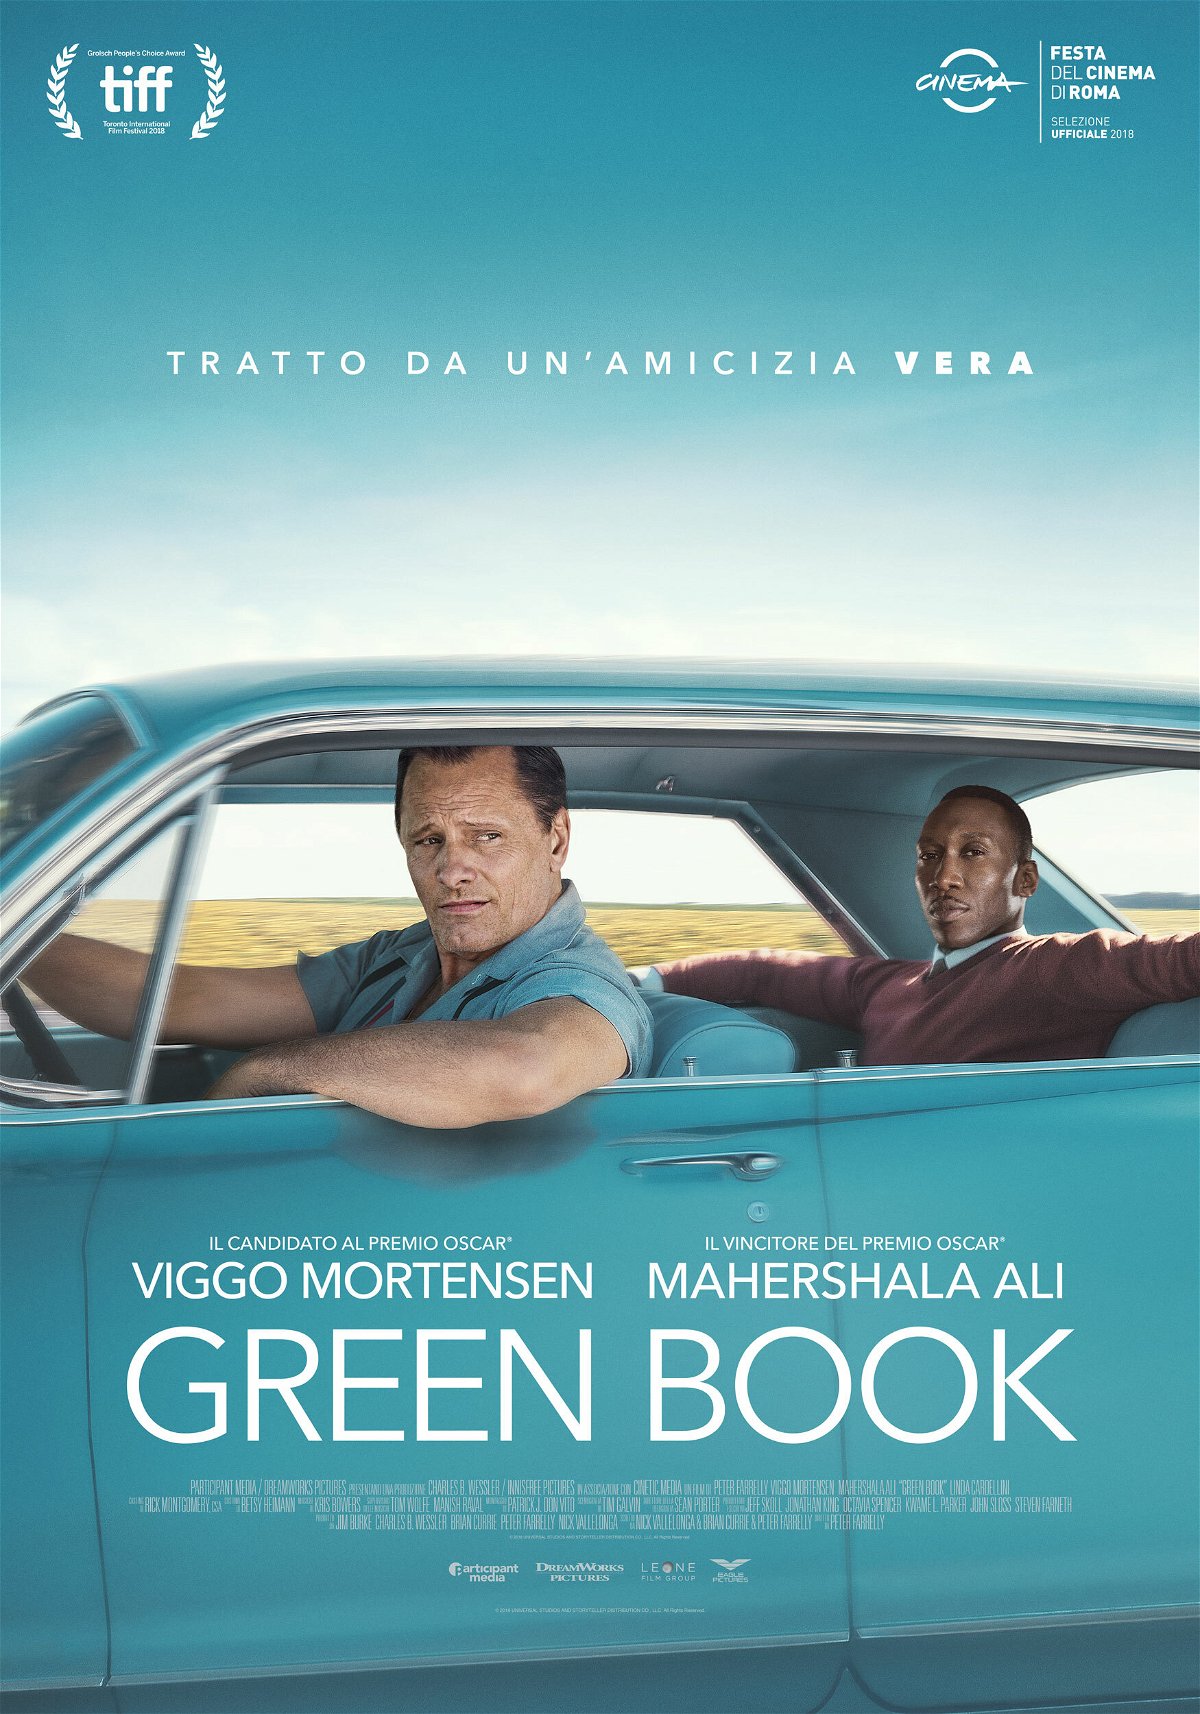 Viggo Mortensen e Mahershala Ali nel poster del film Green Book